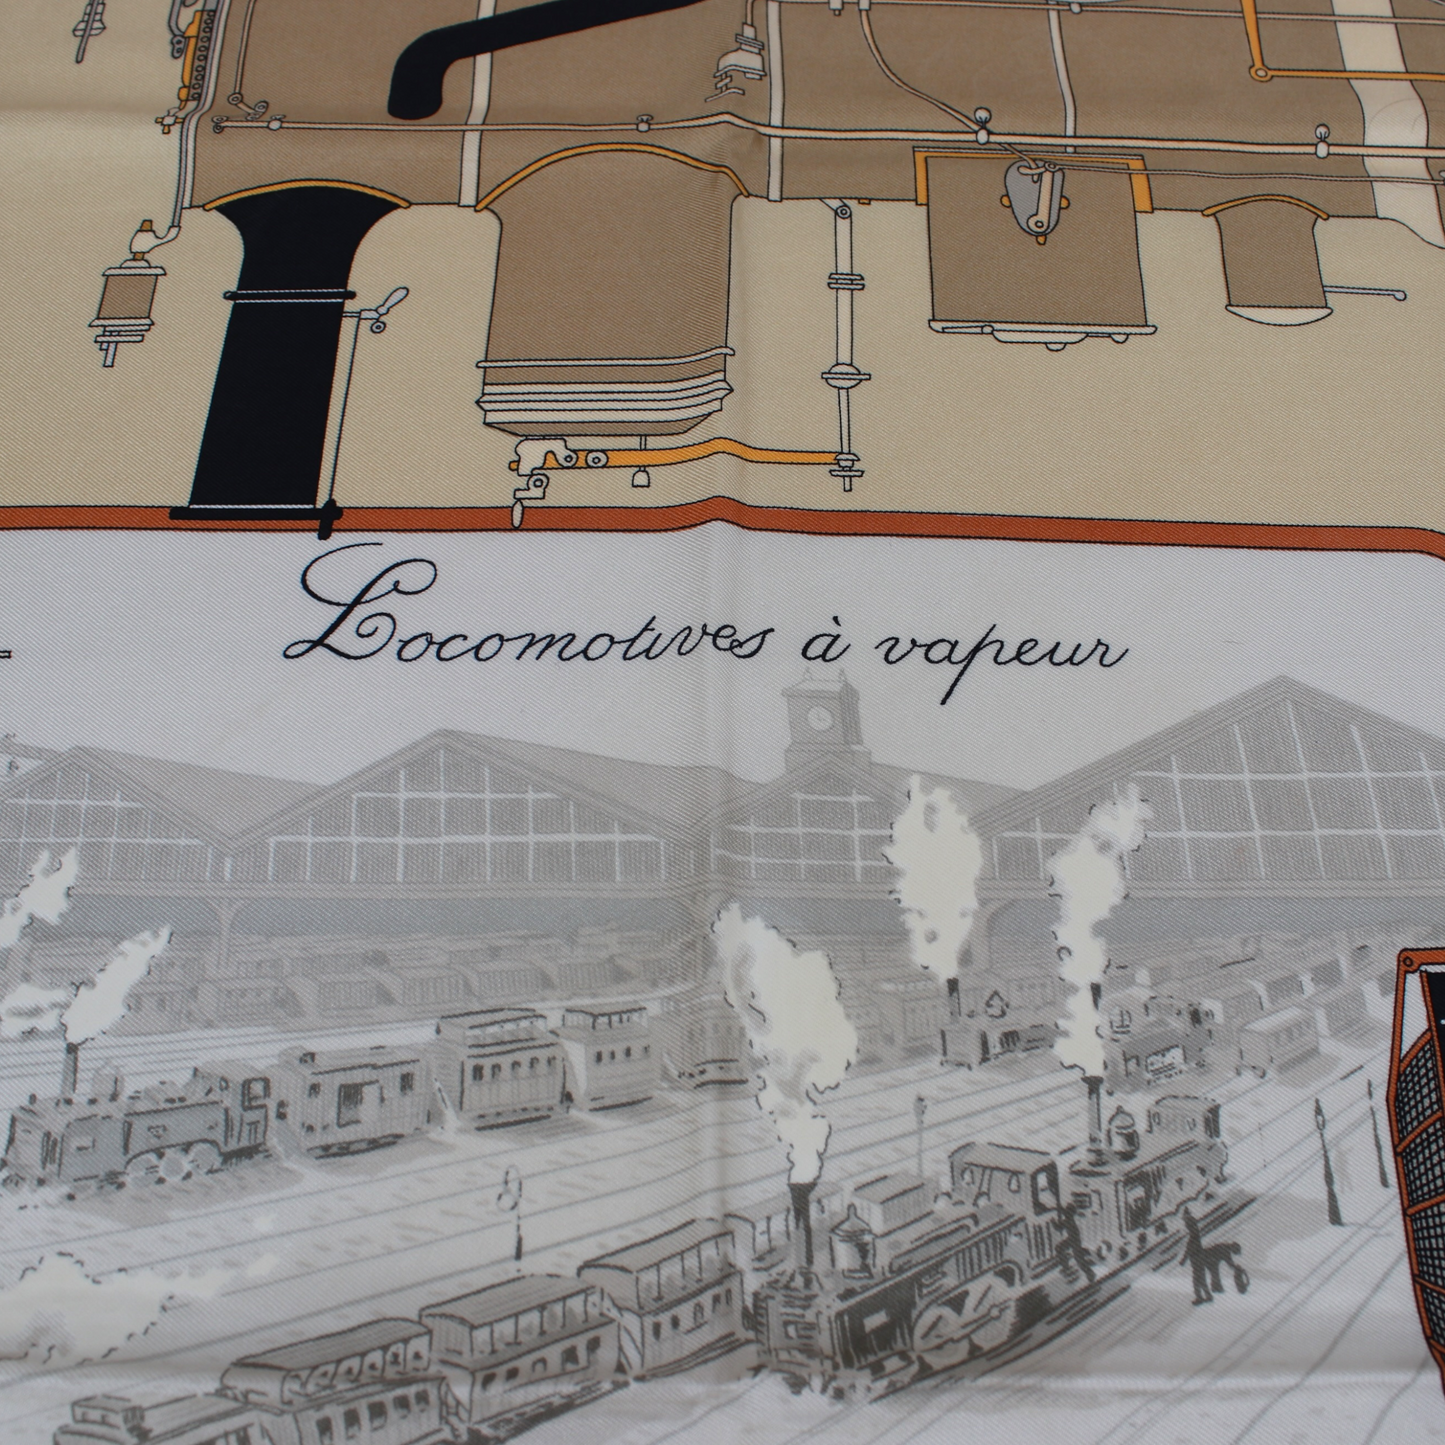 Hermès Carré "Locomotives à vapeur"